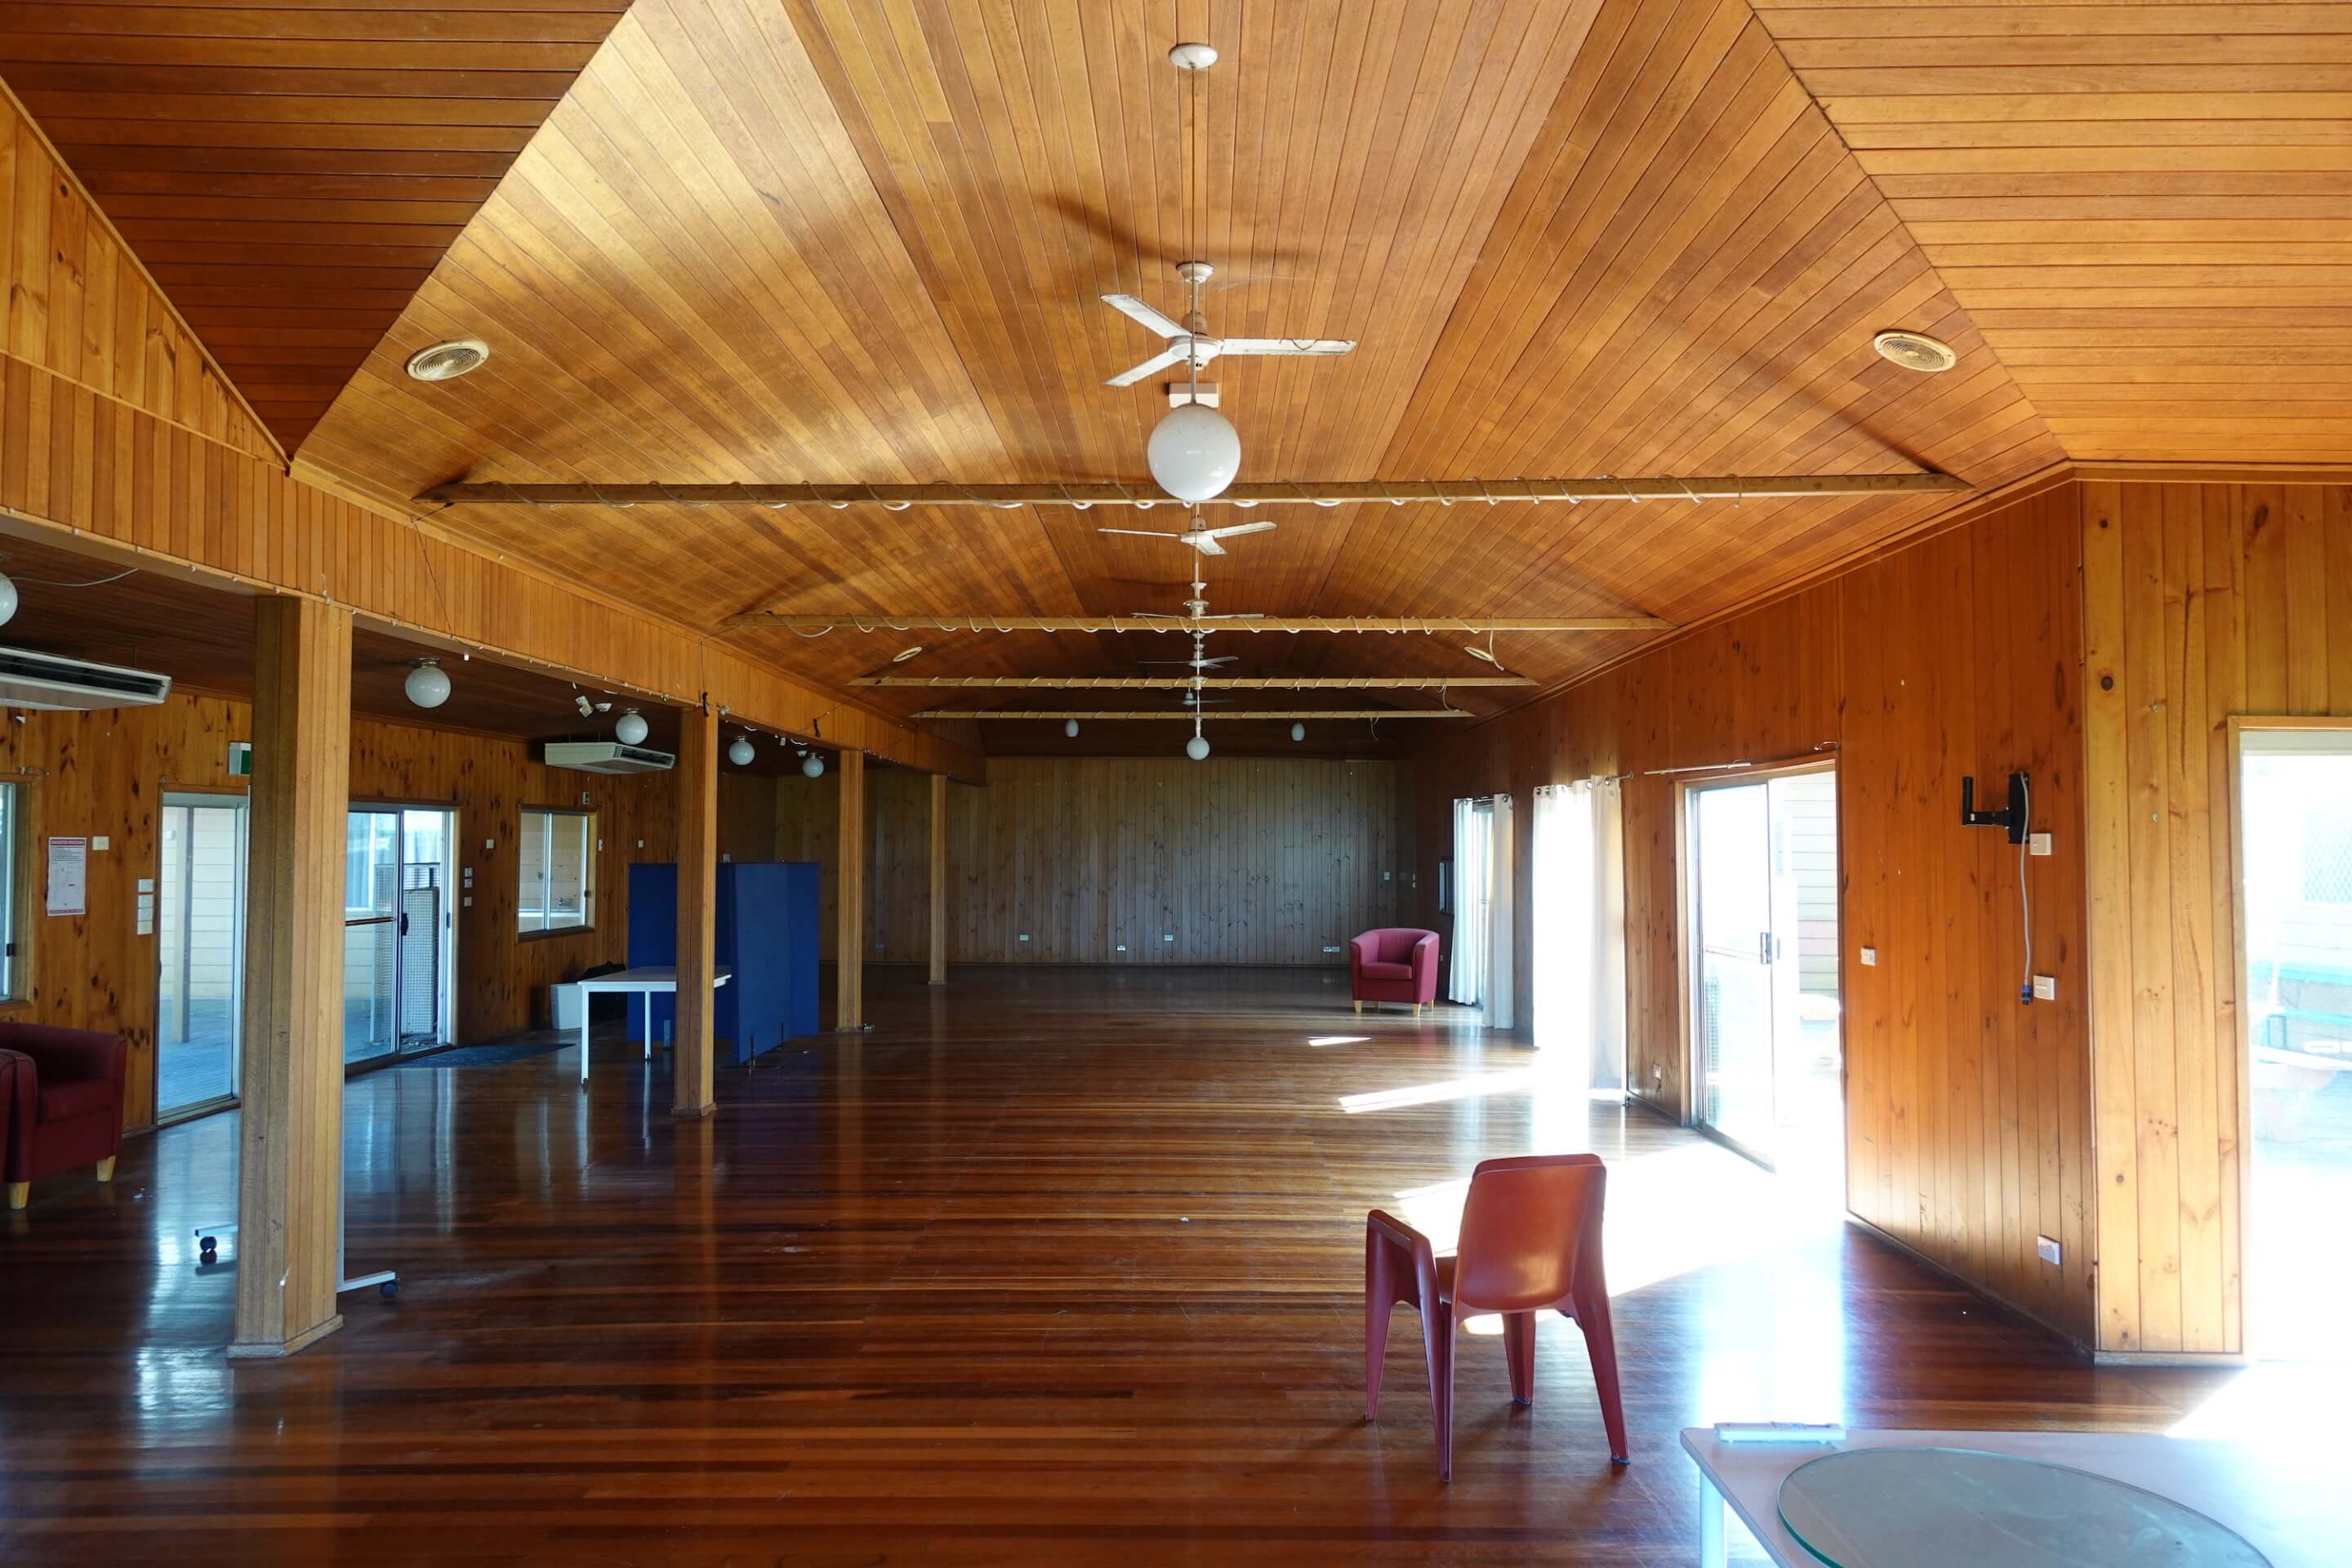 wood interior of a dorm building